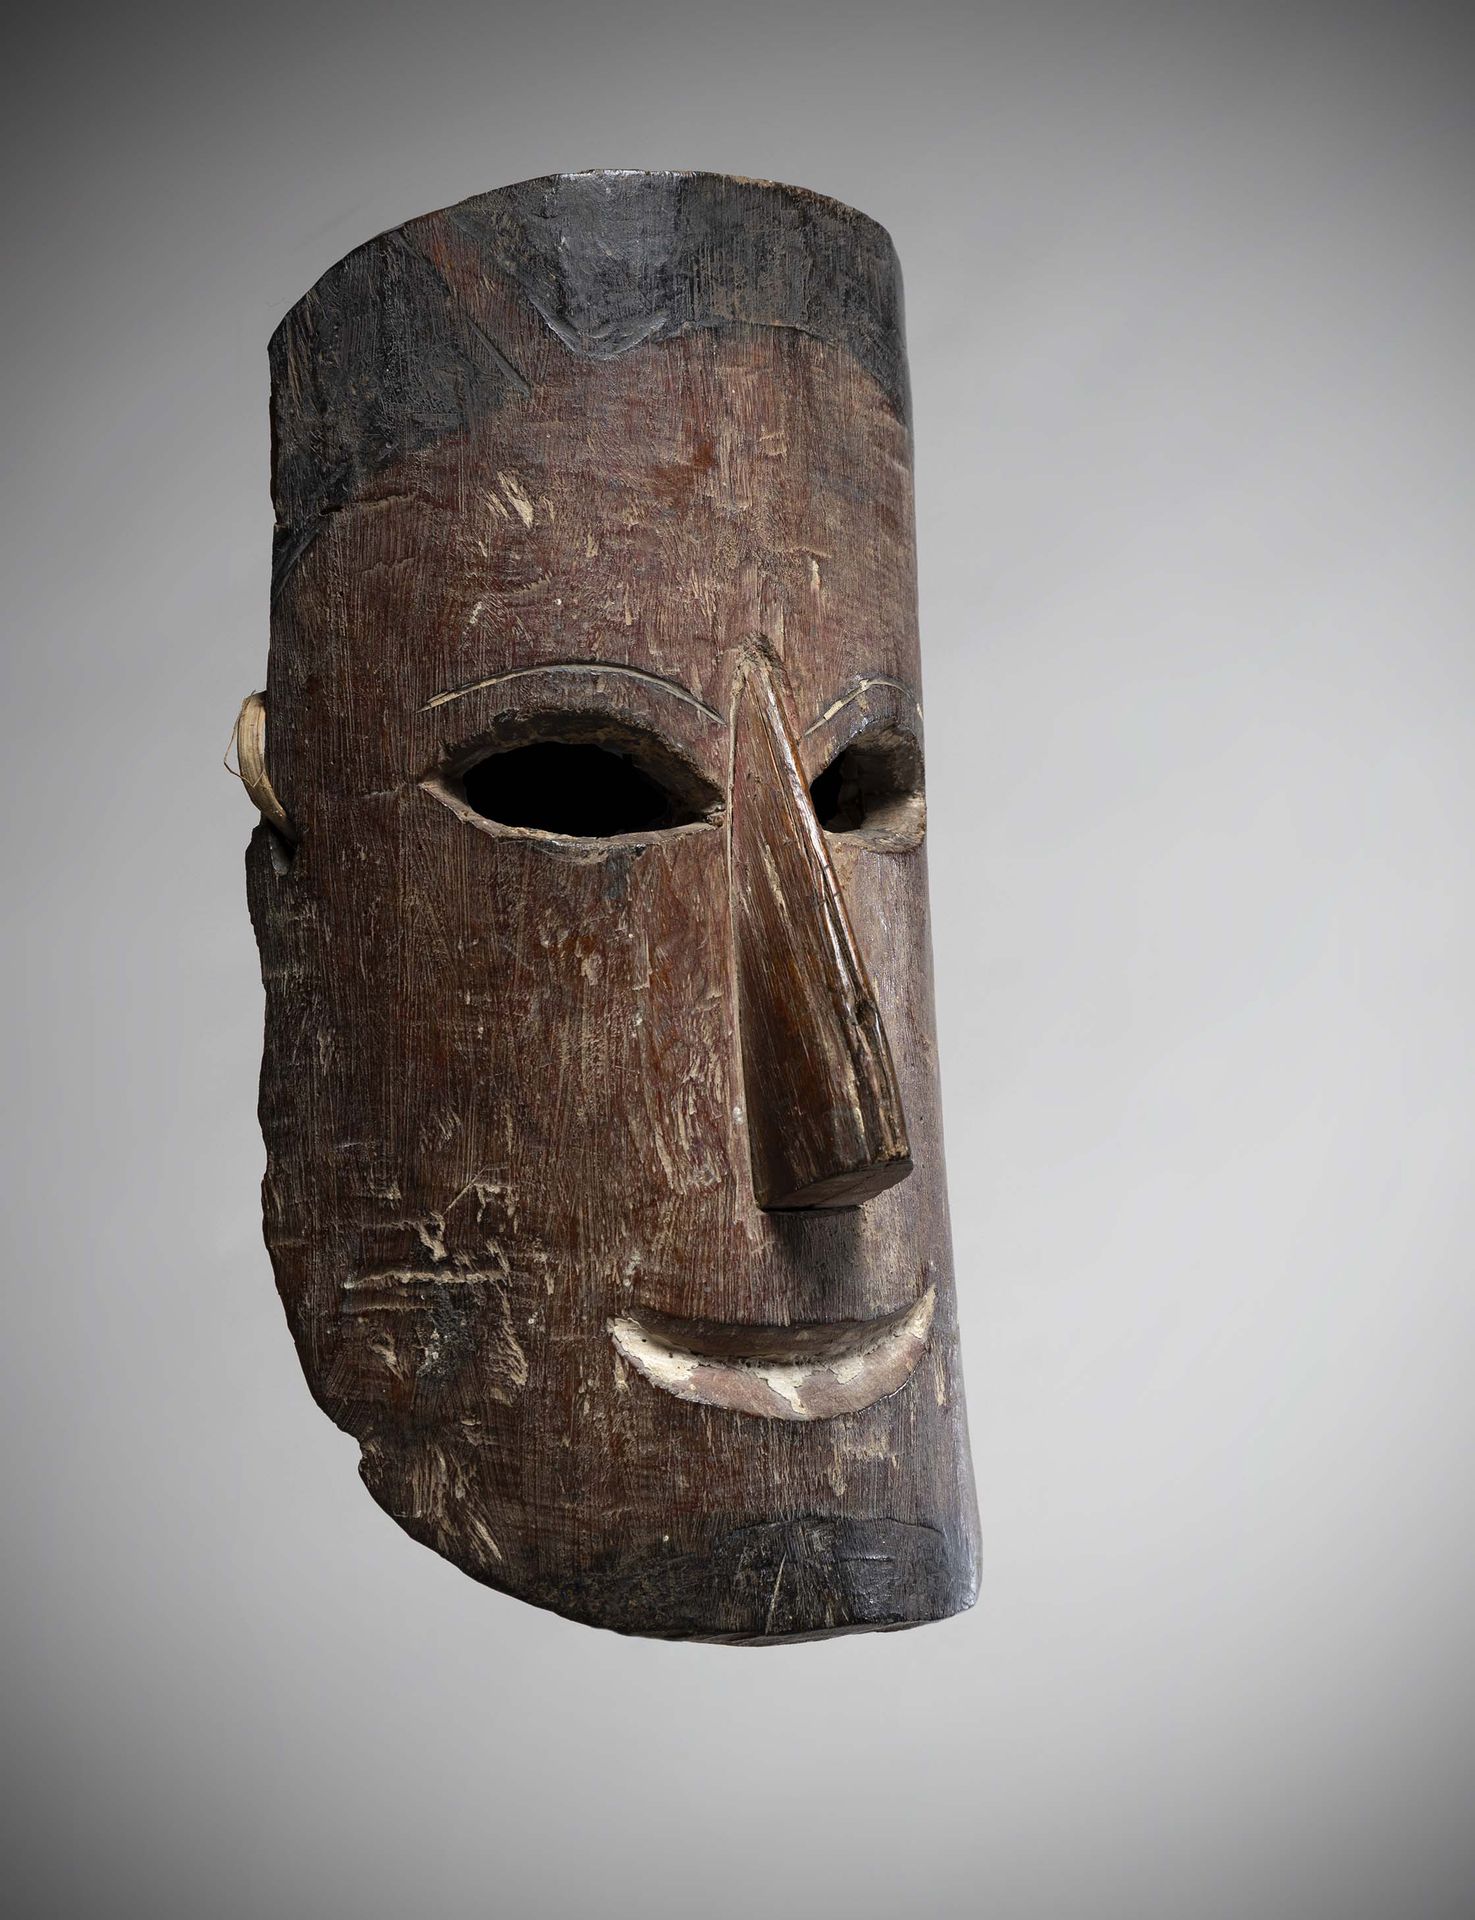 Null 方/

奥卡克

赤道几内亚 硬木面具，有淡淡的铜锈。

眼睛是杏仁形的，胡须和发型被深色染料所突出。

鼻子上有水纹。

1974年左右由A. Du&hellip;